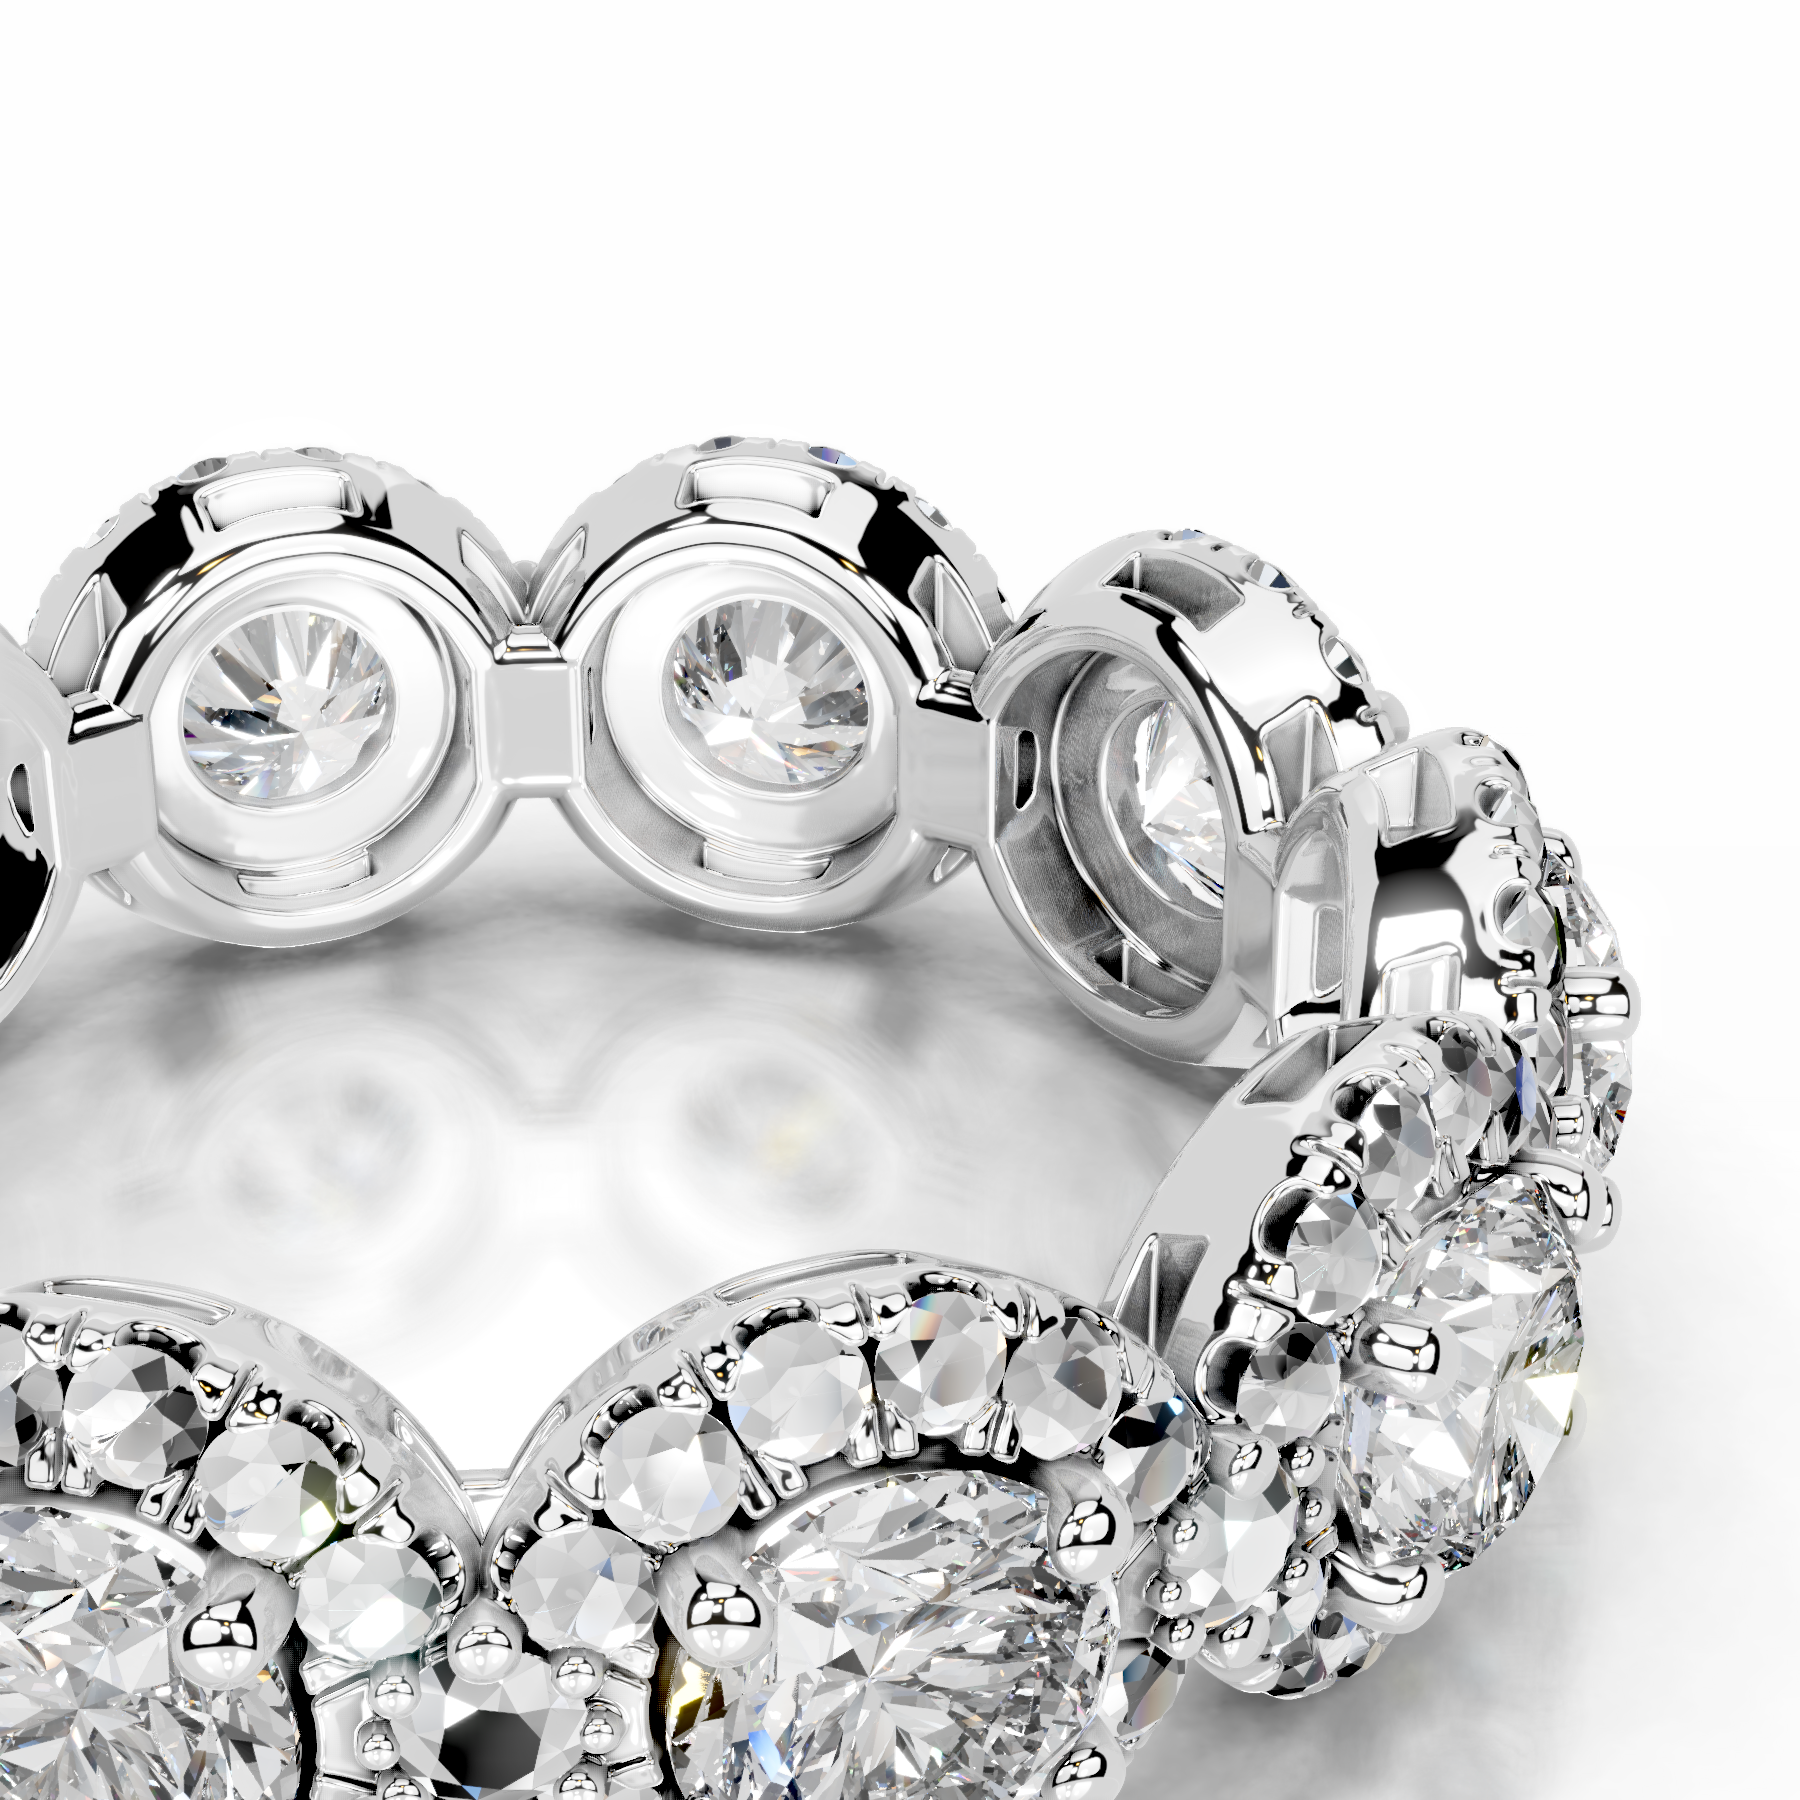 Londyn Diamond Halo Wedding Ring   (3.20 Carat) -14K White Gold